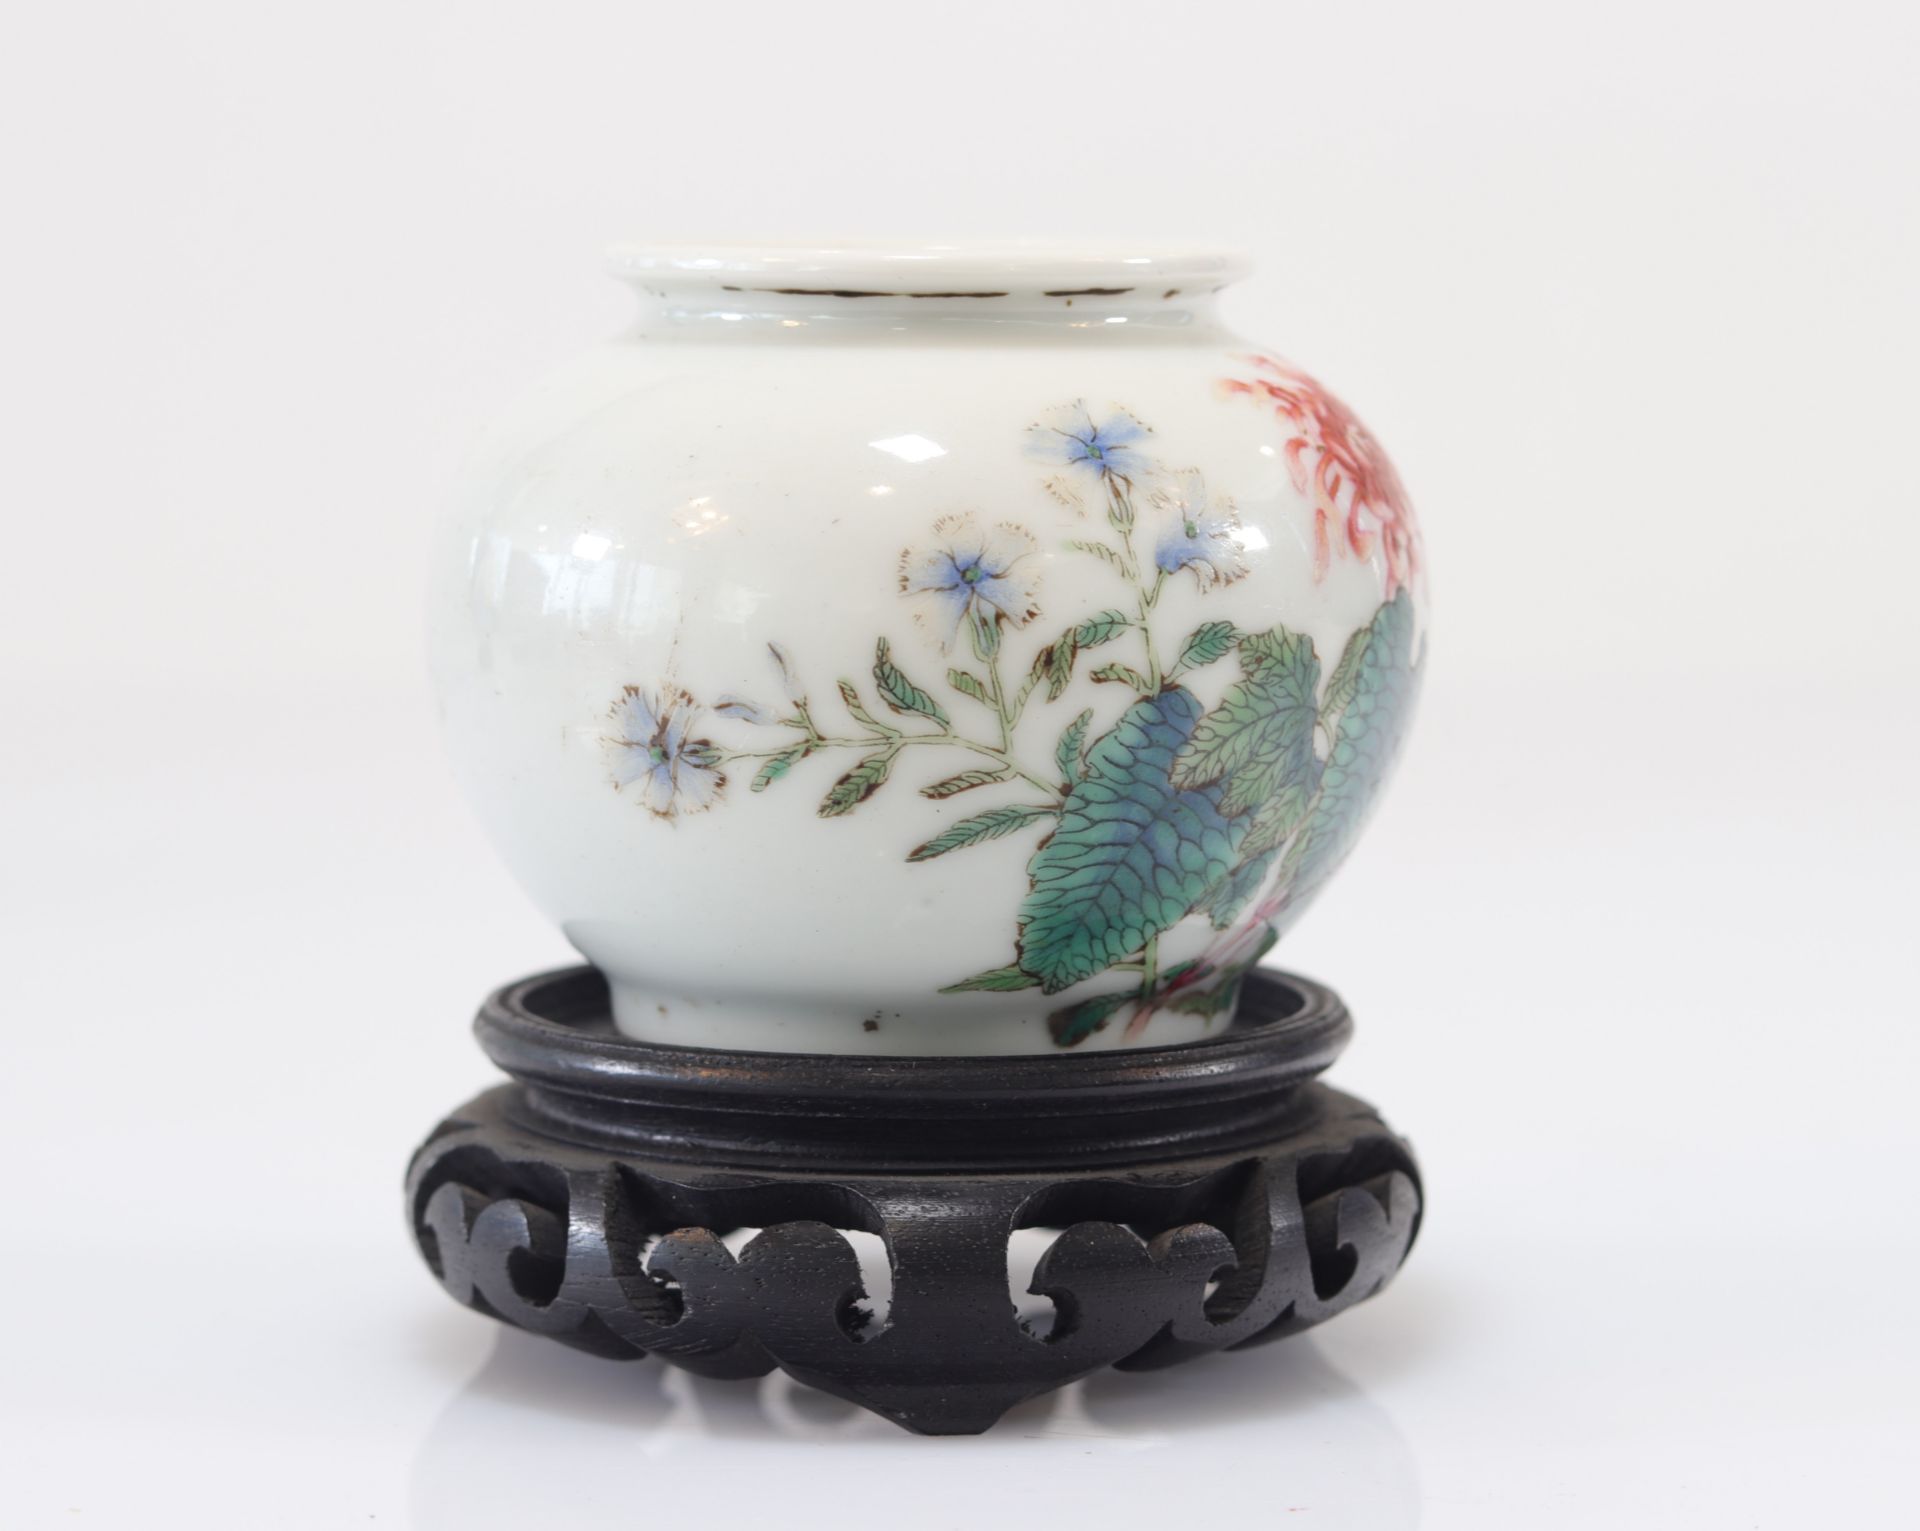 Famille rose porcelain vase with floral decoration - Image 3 of 6